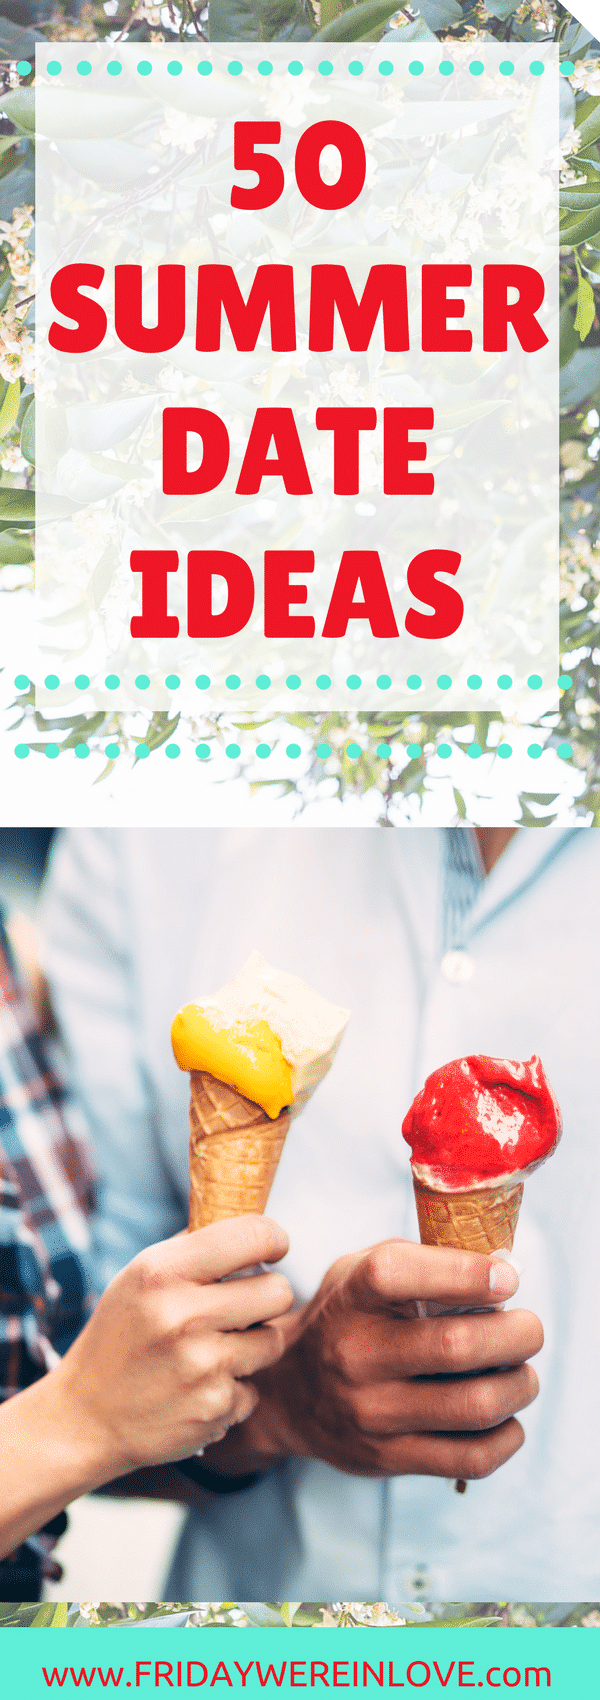 50 Summer Date Ideas